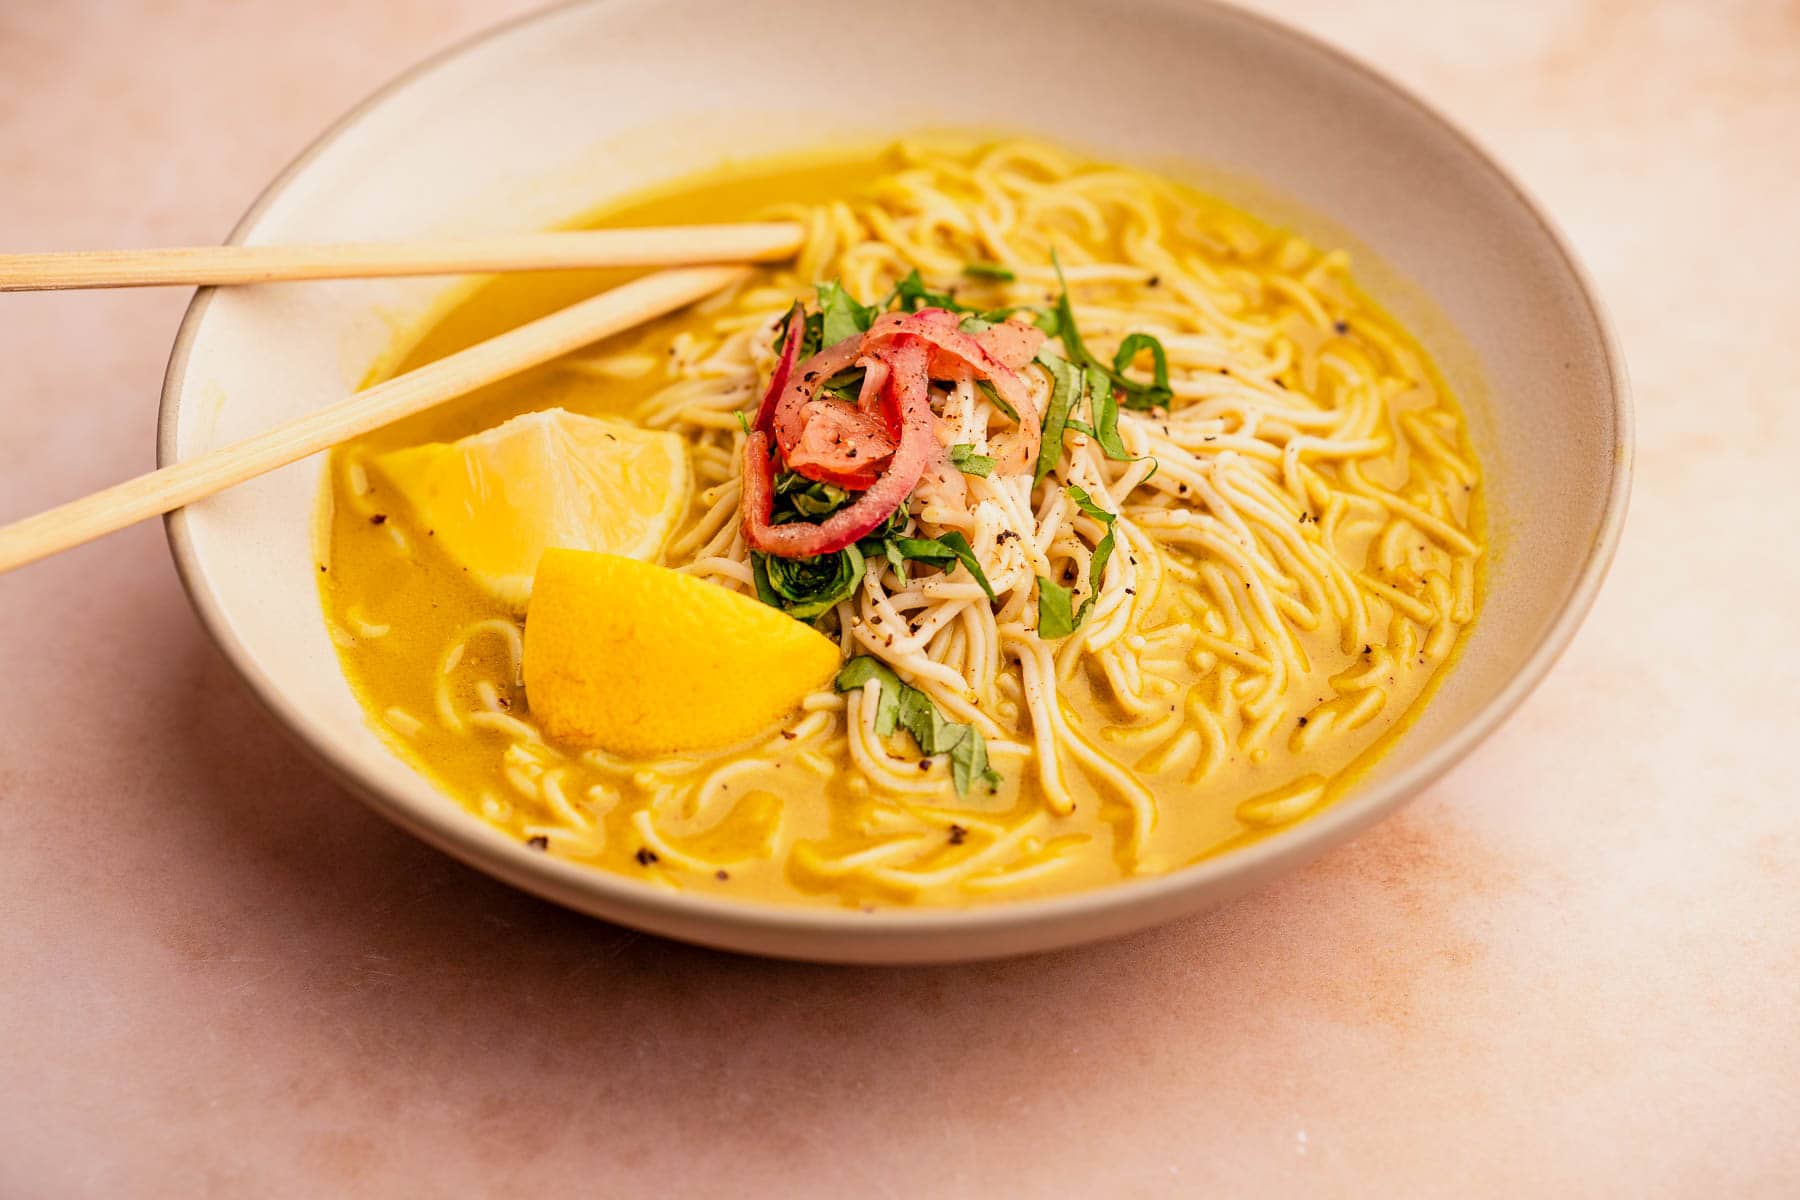 A bowl of golden noodle soup with chopsticks.